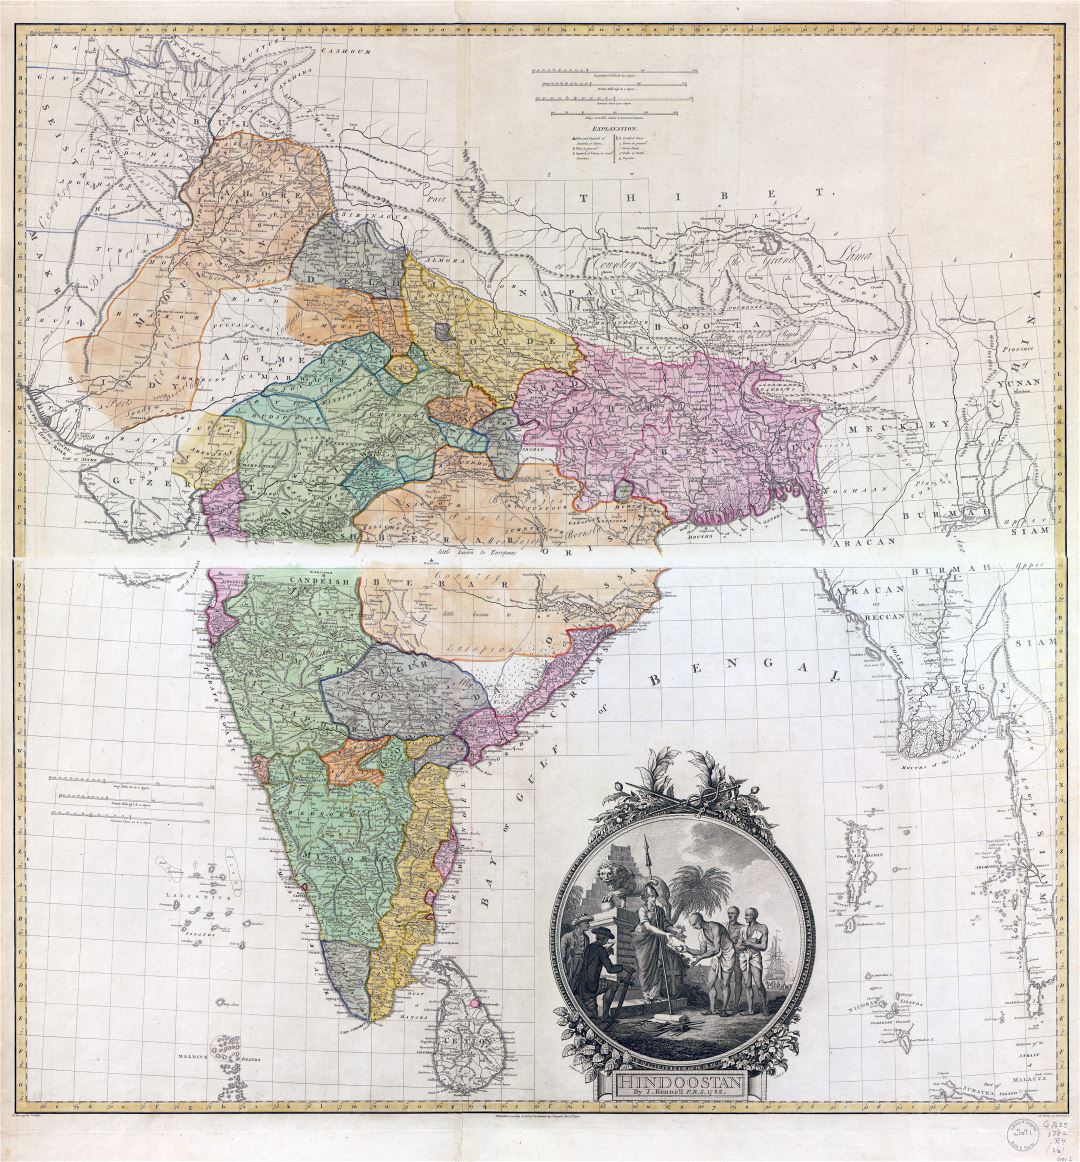 Gran escala viejo mapa detallado de Indostán (Asia del Sur) - 1782